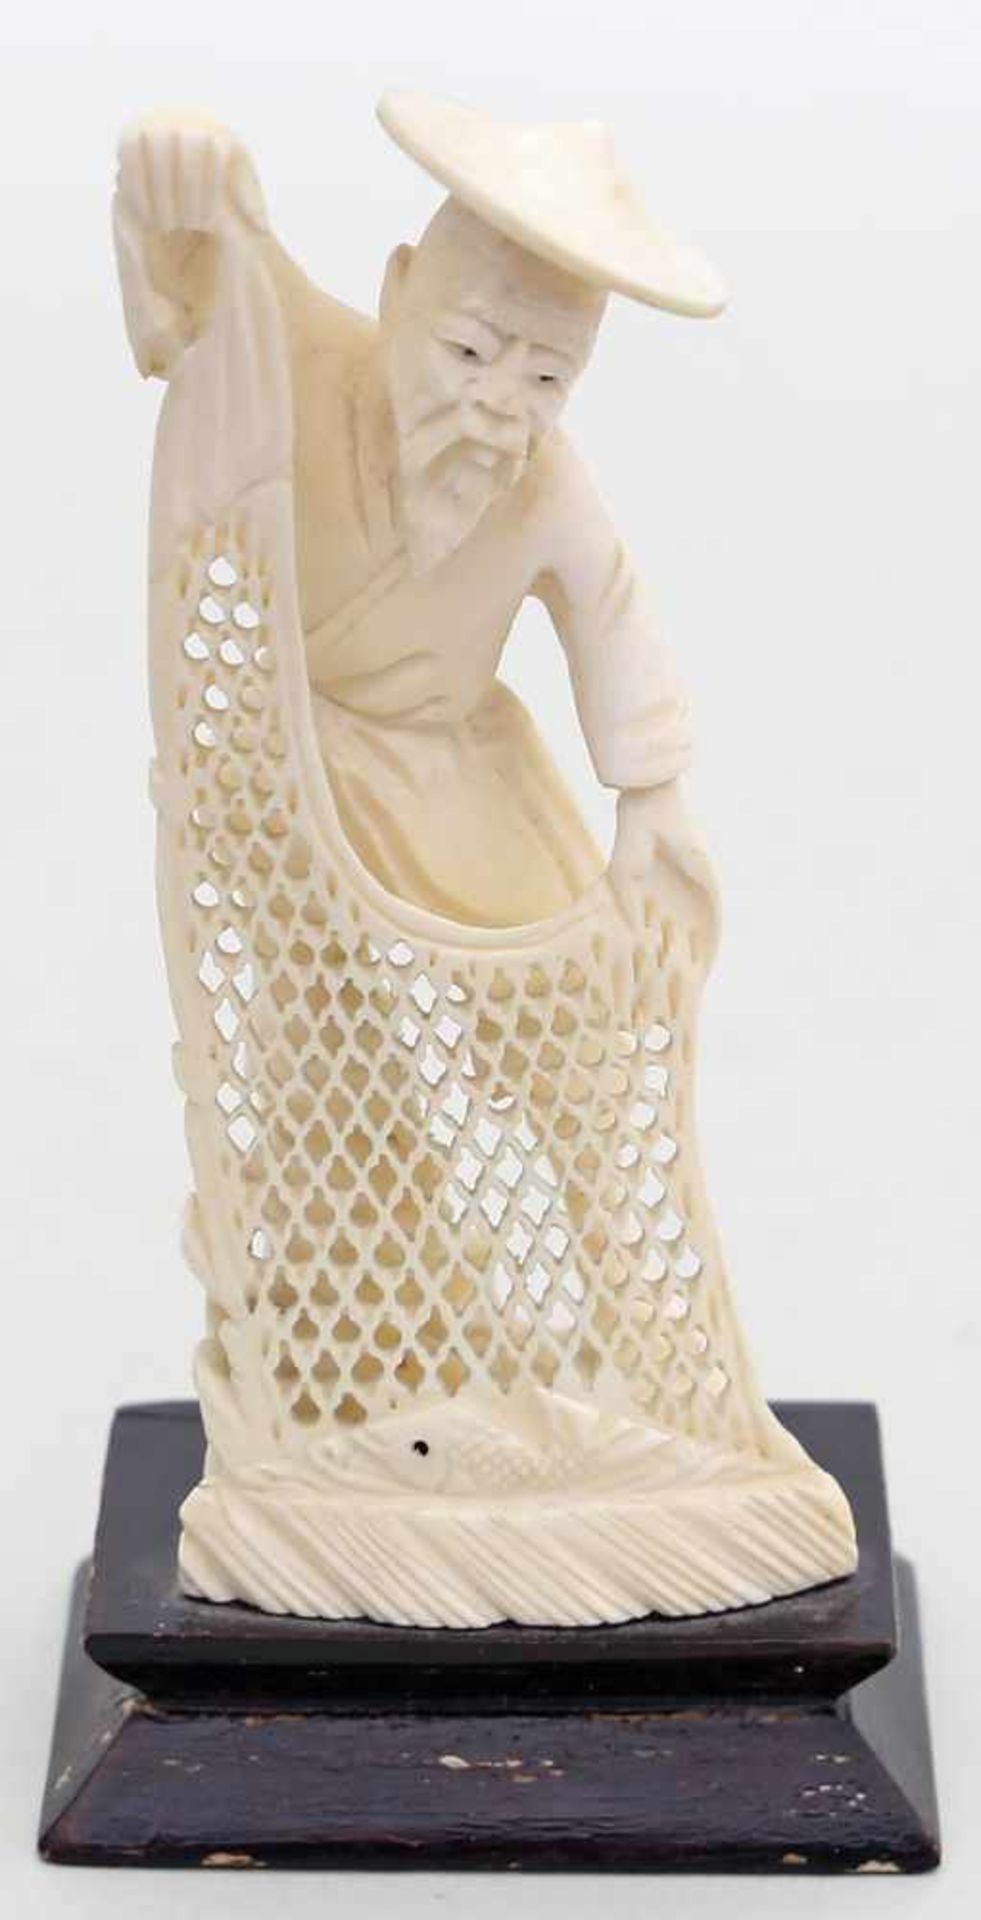 Sklulptur eines Fischers mit Netz.Elfenbein, vollplastisch geschnitzt. China, 20. Jh. H. 10 cm,